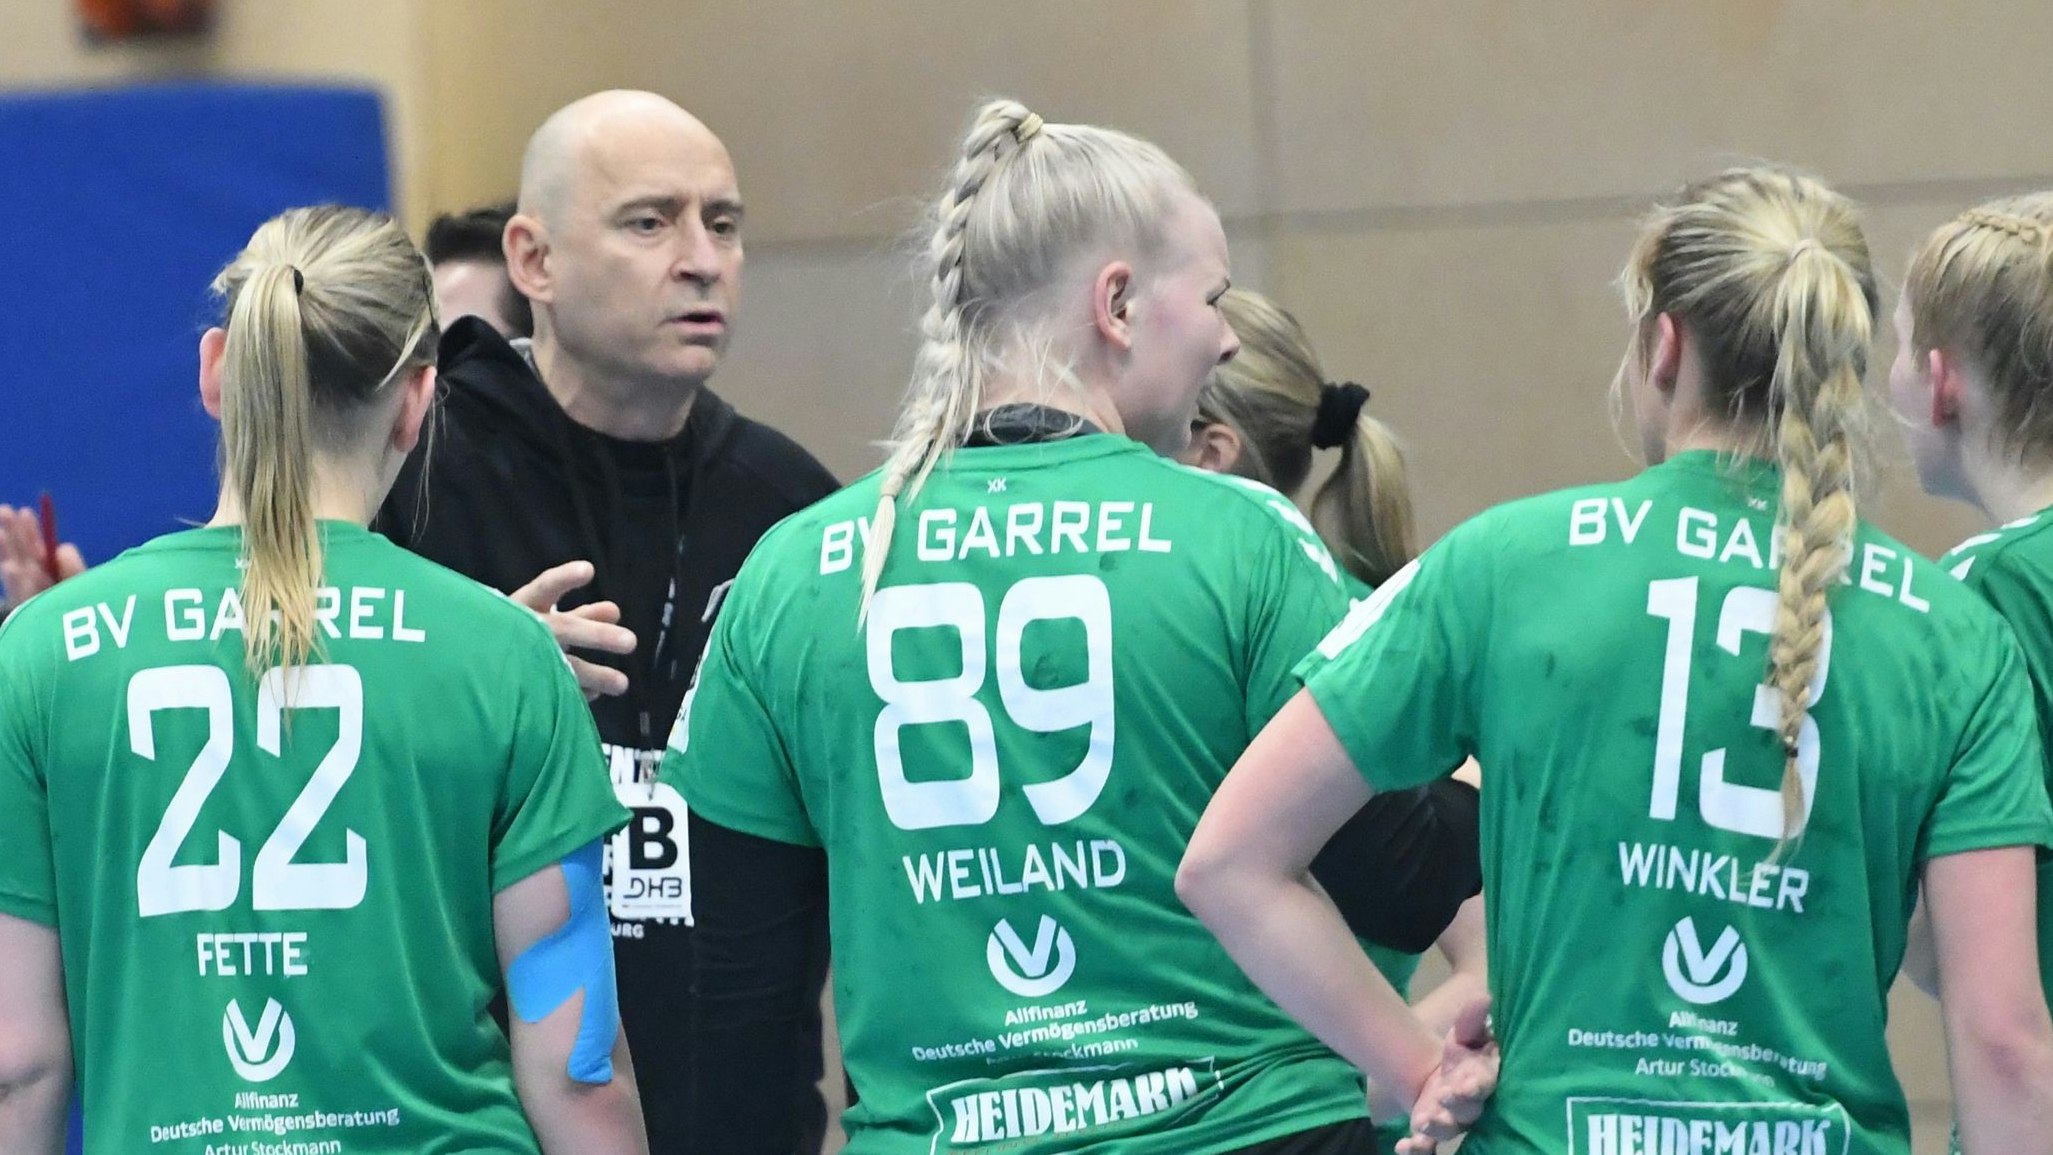 Ende der Zusammenarbeit naht: Grzegorz Goscinski wird in der nächsten Saison nicht mehr Trainer der Garreler Handballfrauen sein. Foto: Langosch